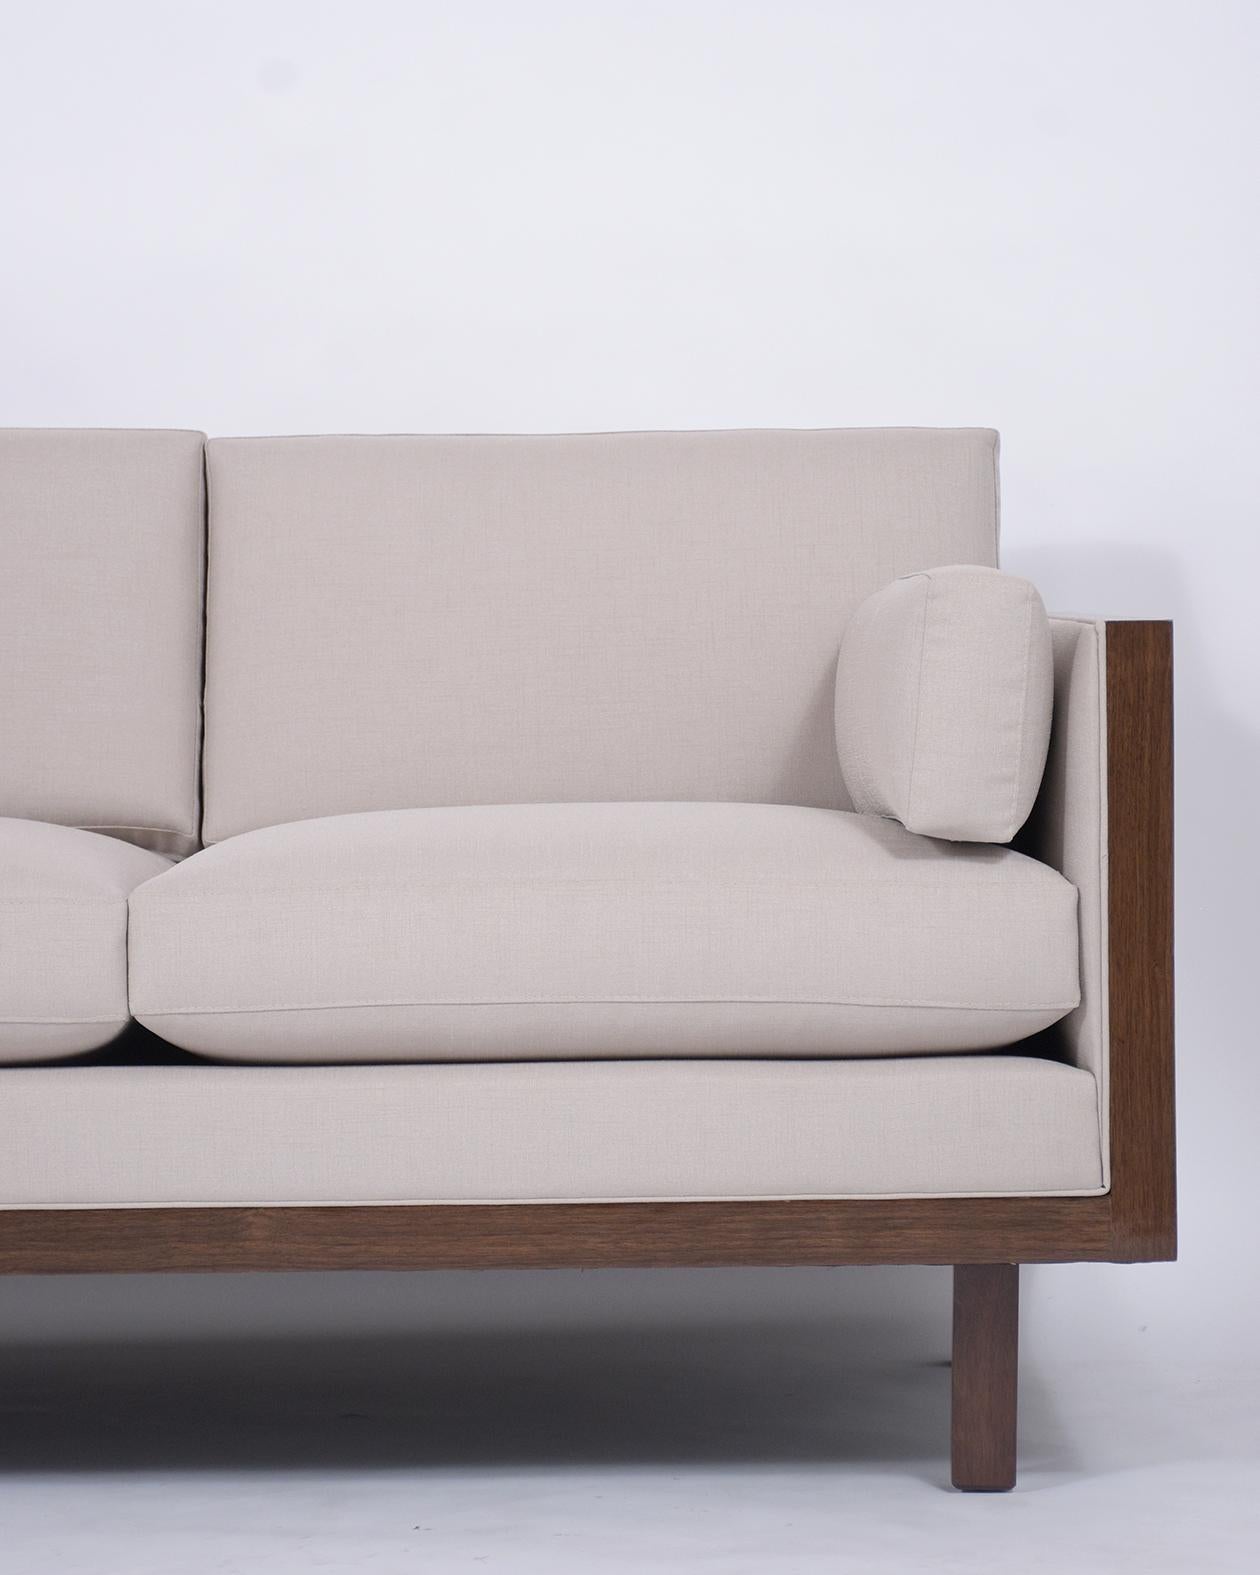 Mid-20th Century Midcentury Milo Baughman Style Sofa